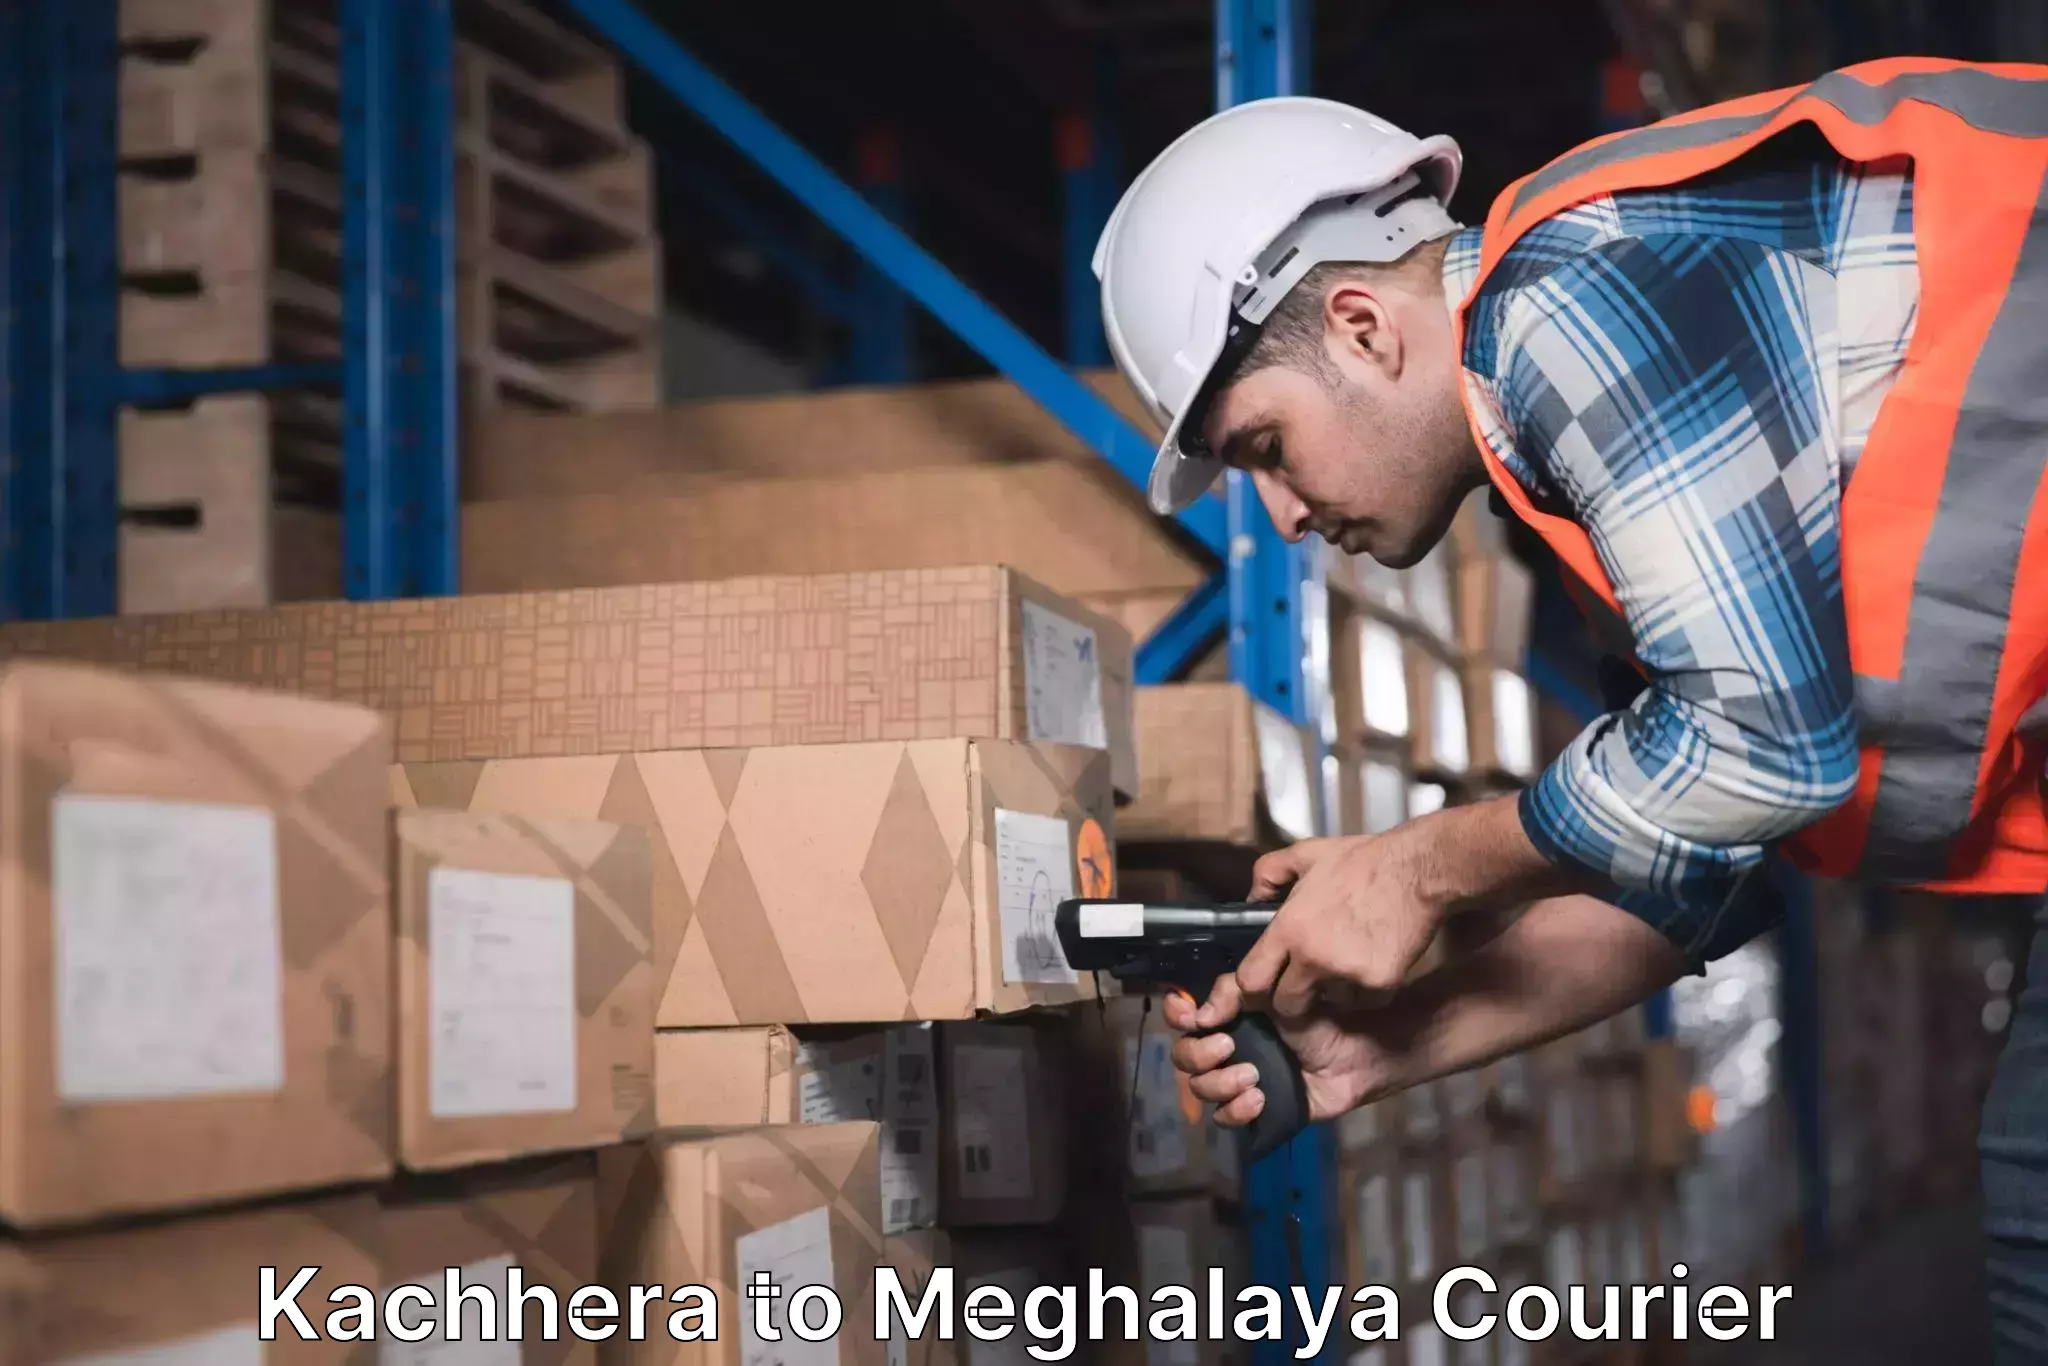 Seamless shipping service Kachhera to Tura